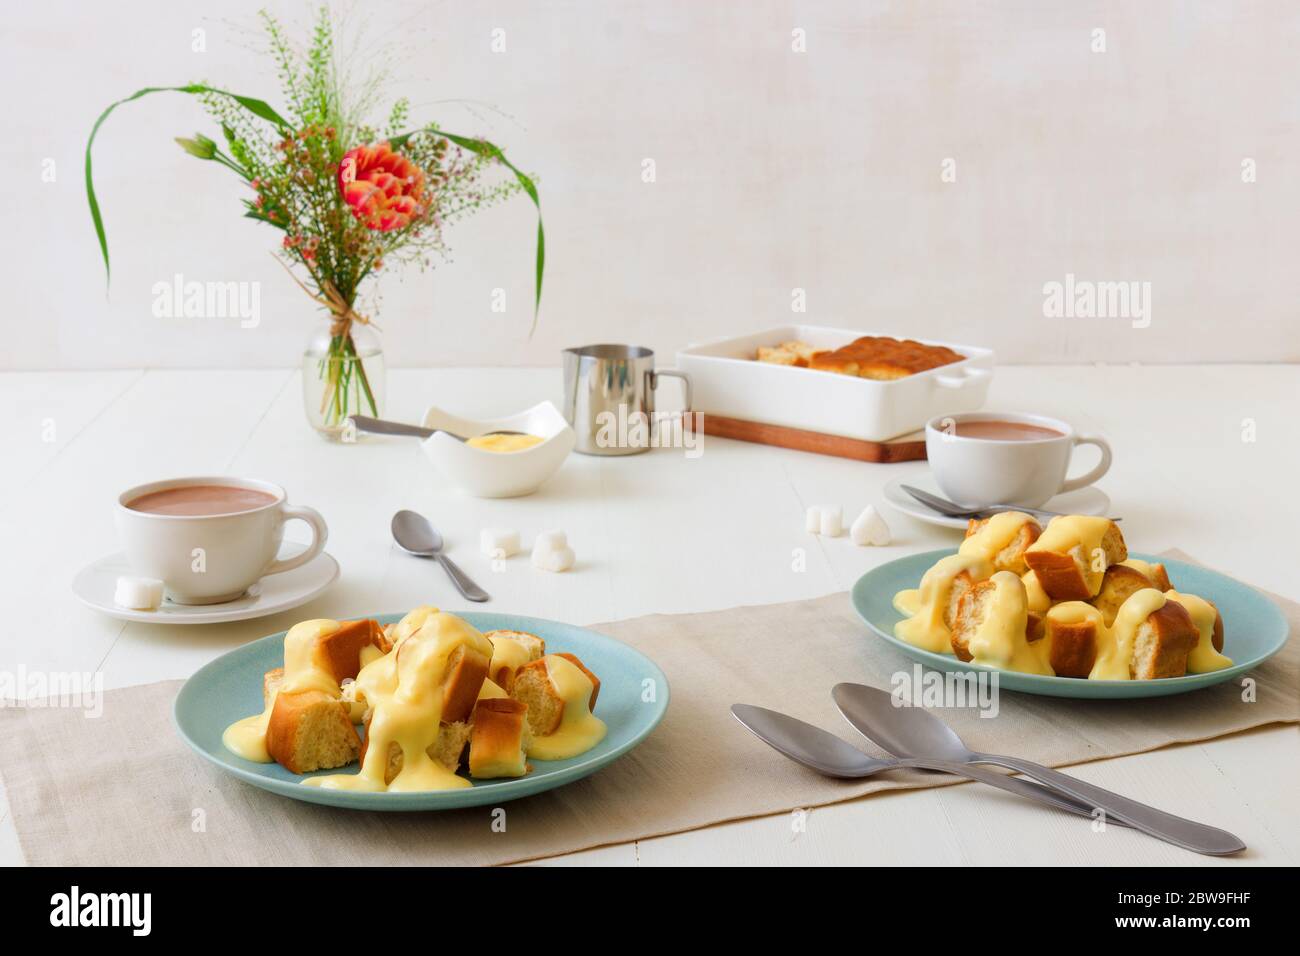 Hefegebäck mit Zabaglione oder Vanillecreme oder Eierkuchen, süßem Dessert oder Hauptgericht. Weißer Holztisch Hintergrund. Stockfoto